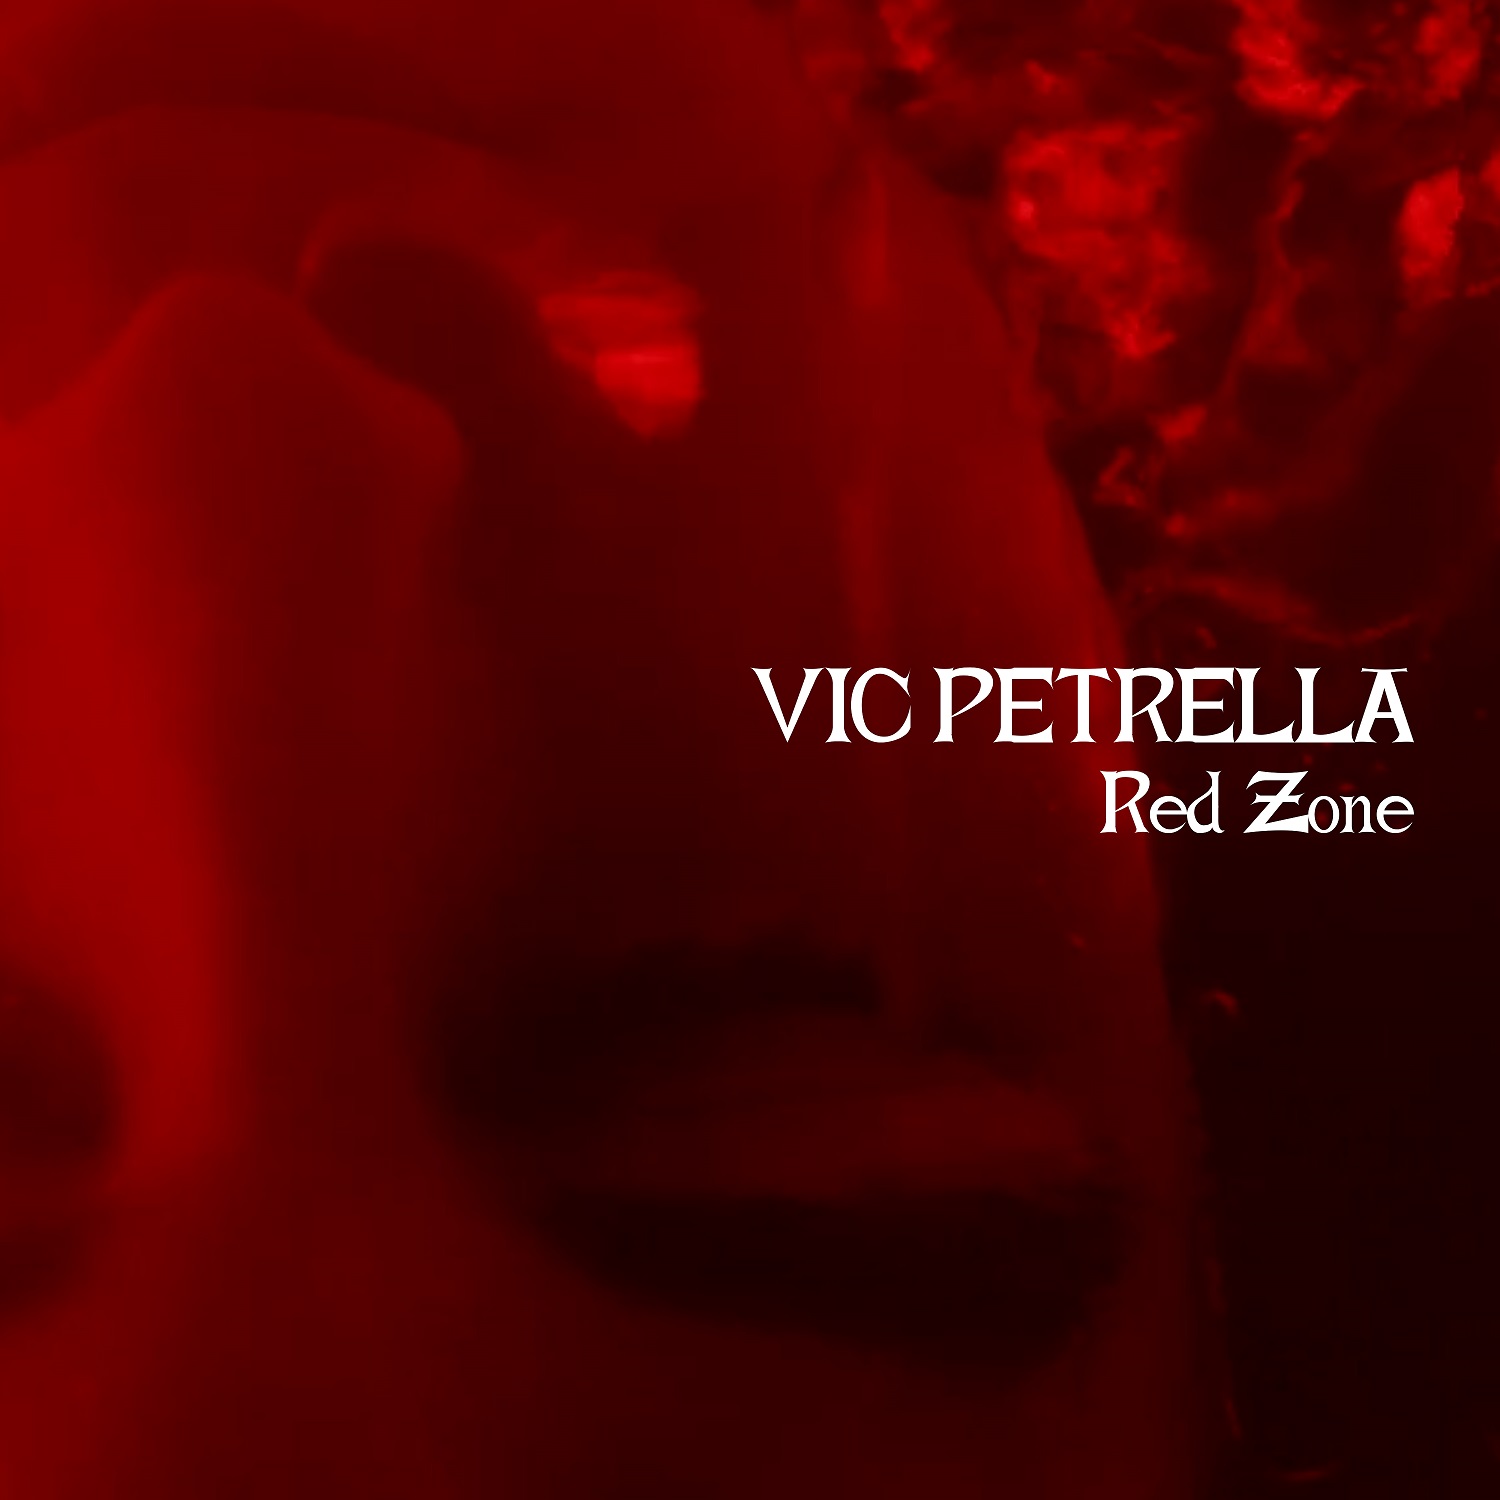 Vic Petrella